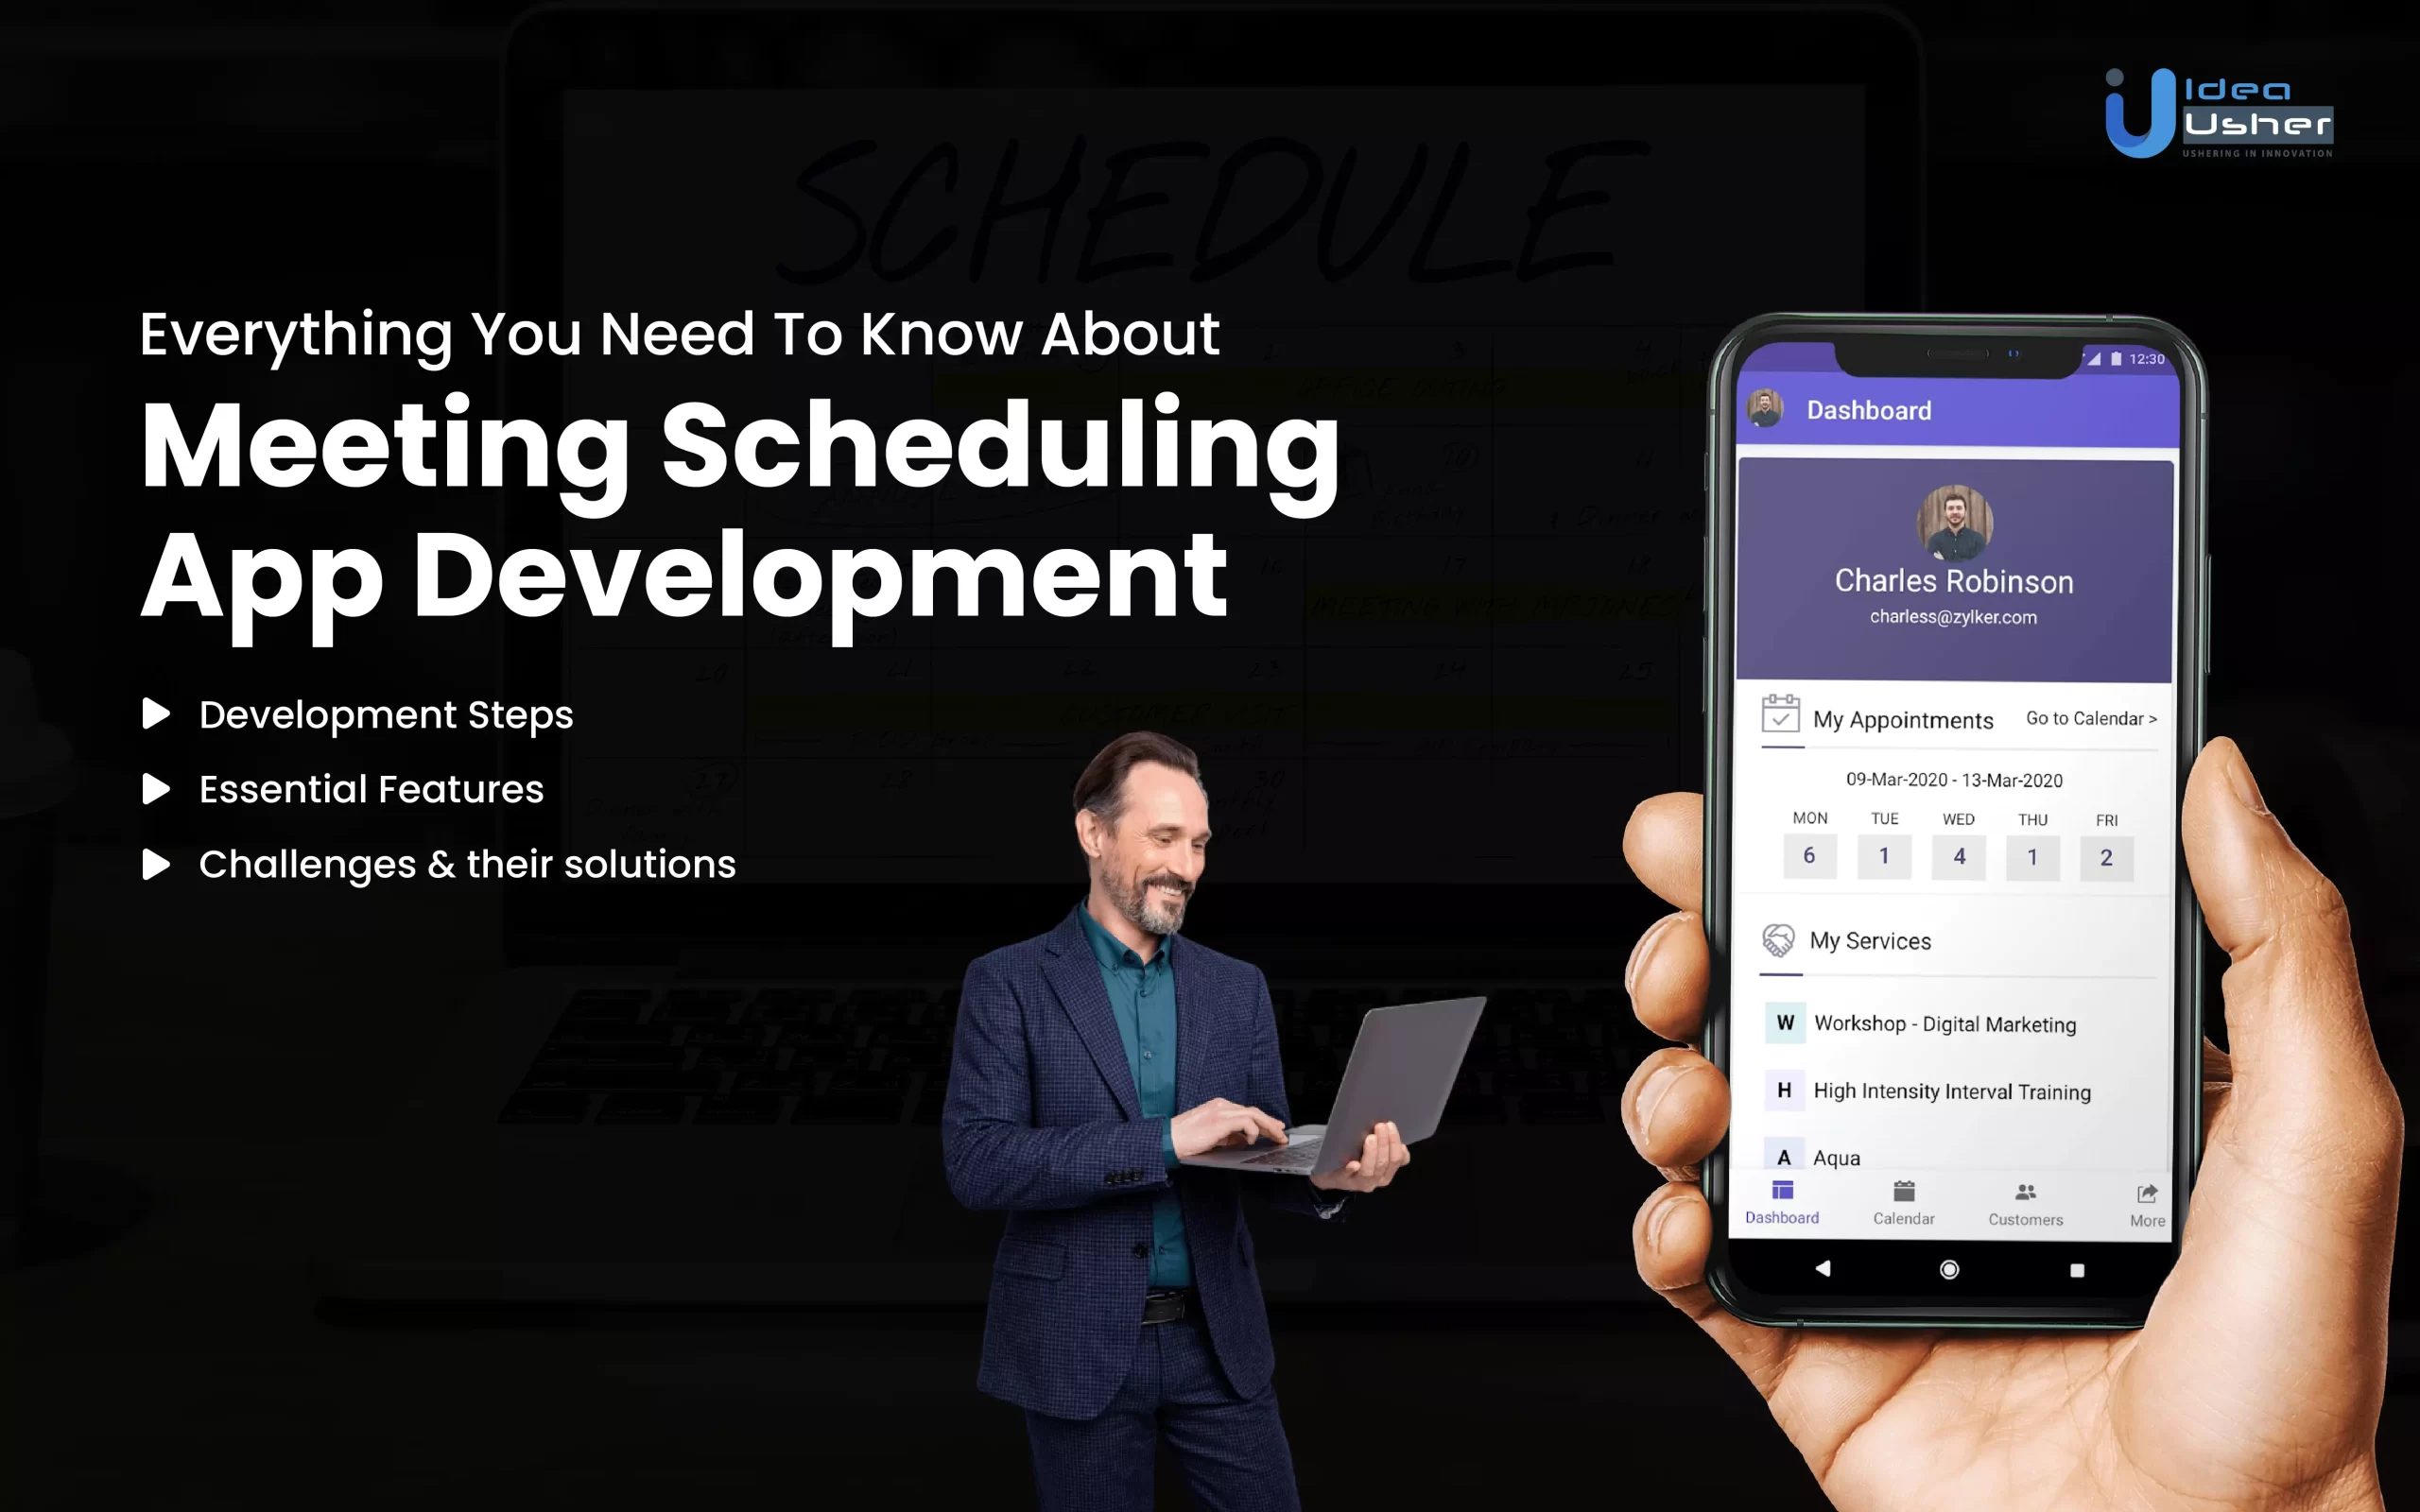 Meeting scheduling app development